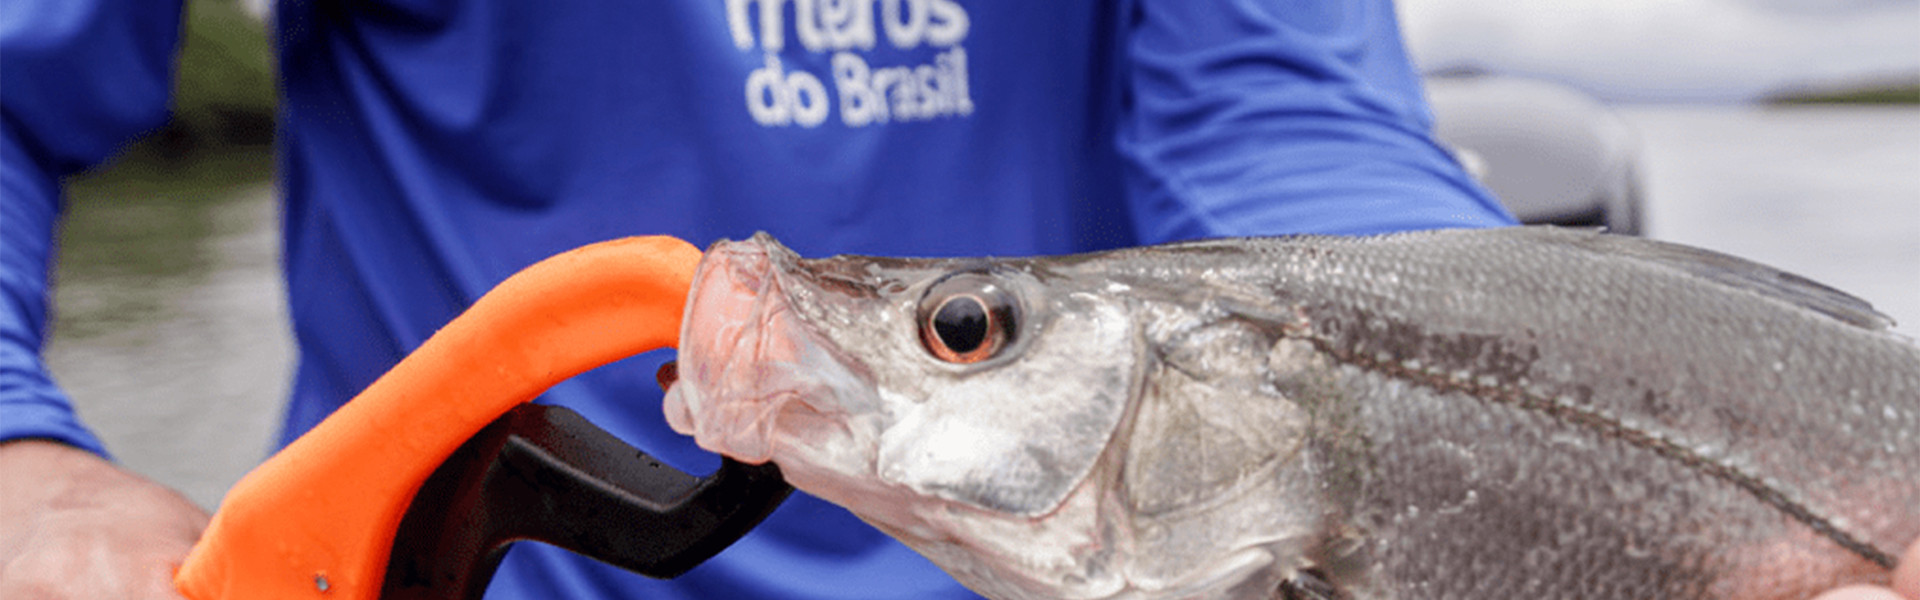 Projeto Meros do Brasil lança e-book para auxiliar pescadores esportivos: conheça